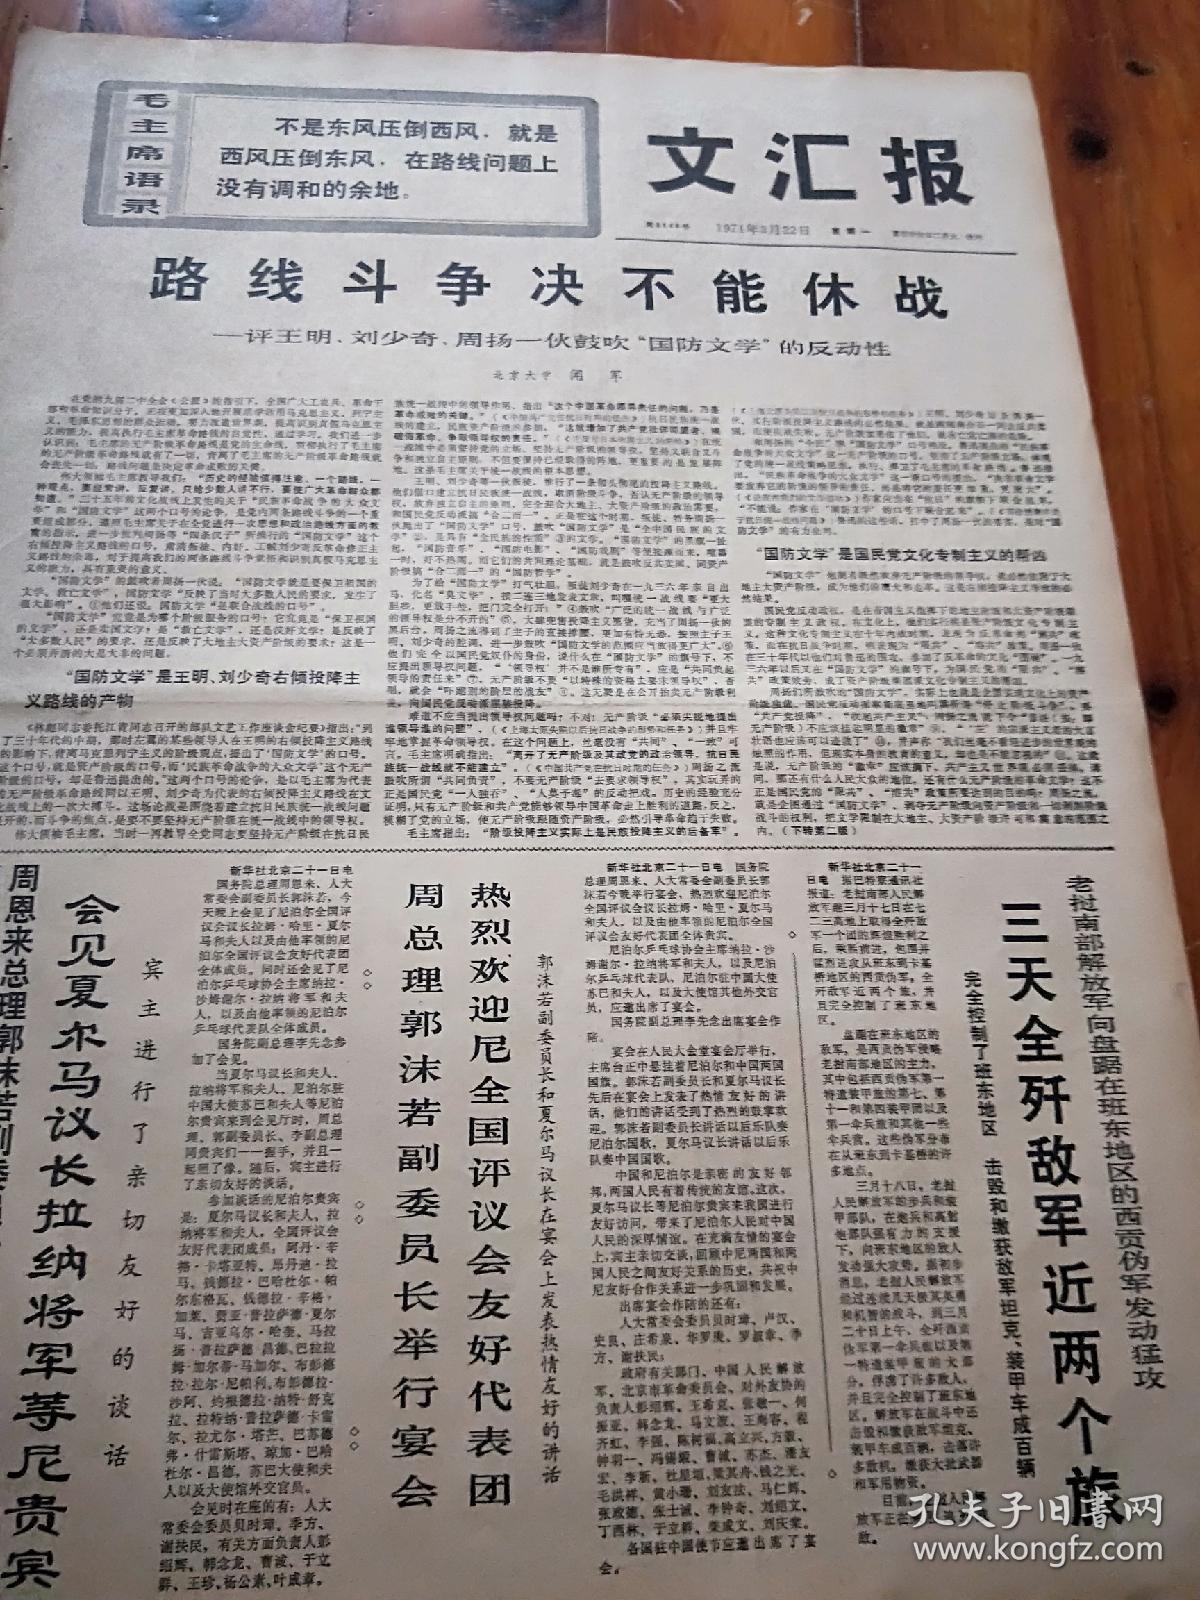 报纸《文汇报》1971年3月22日（四开四版）三天全歼敌军近两个旅。英特纳雄耐尔就一定要实现。